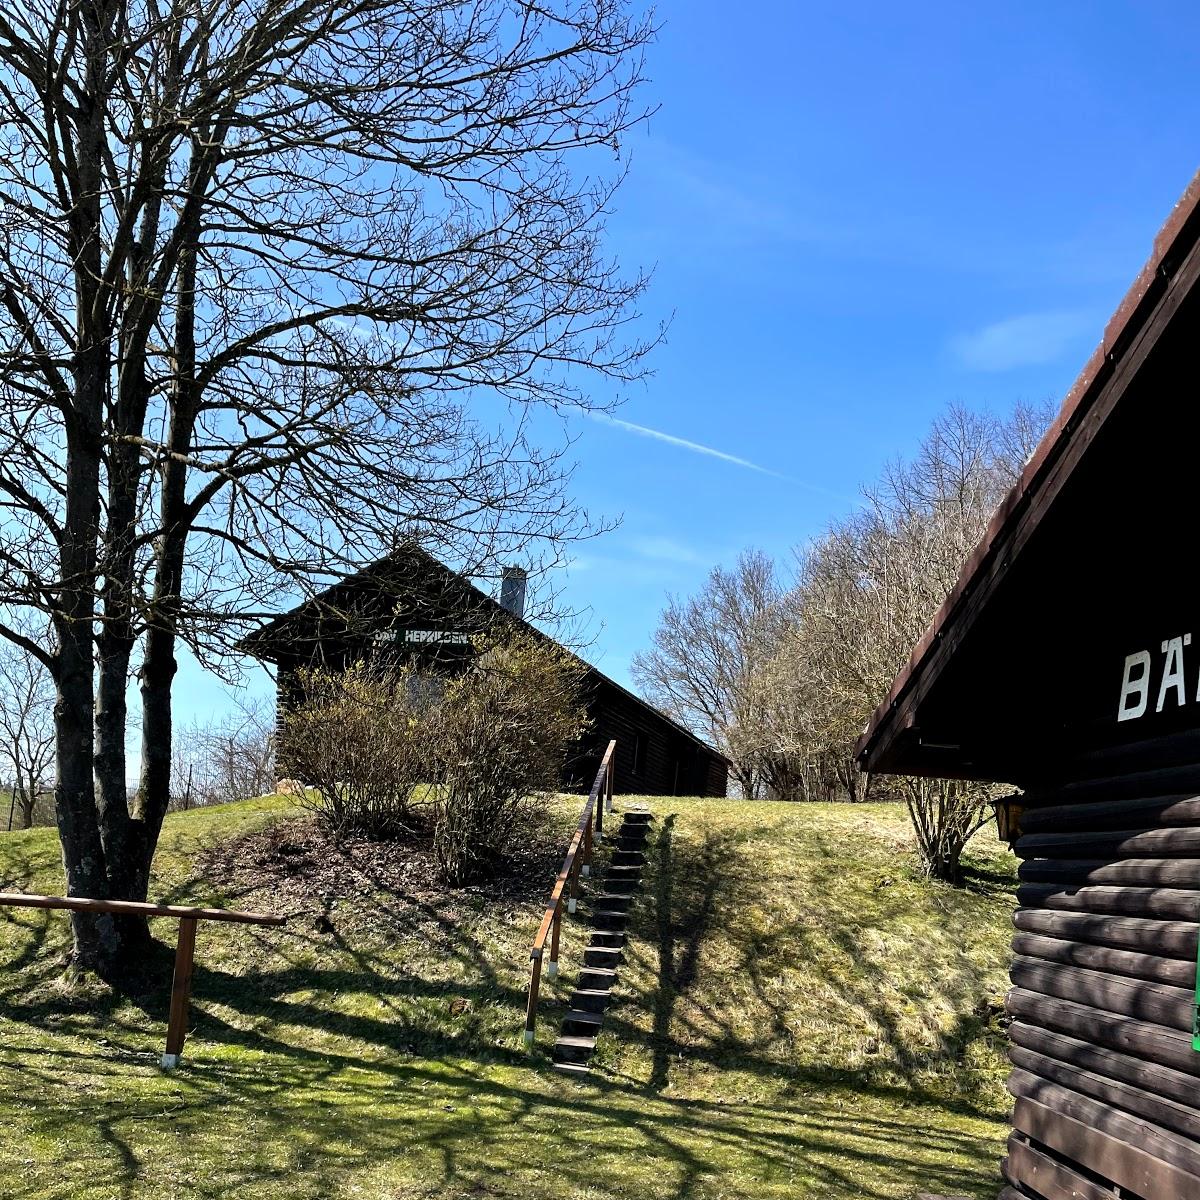 Restaurant "Bärenlochhütte" in Herrieden